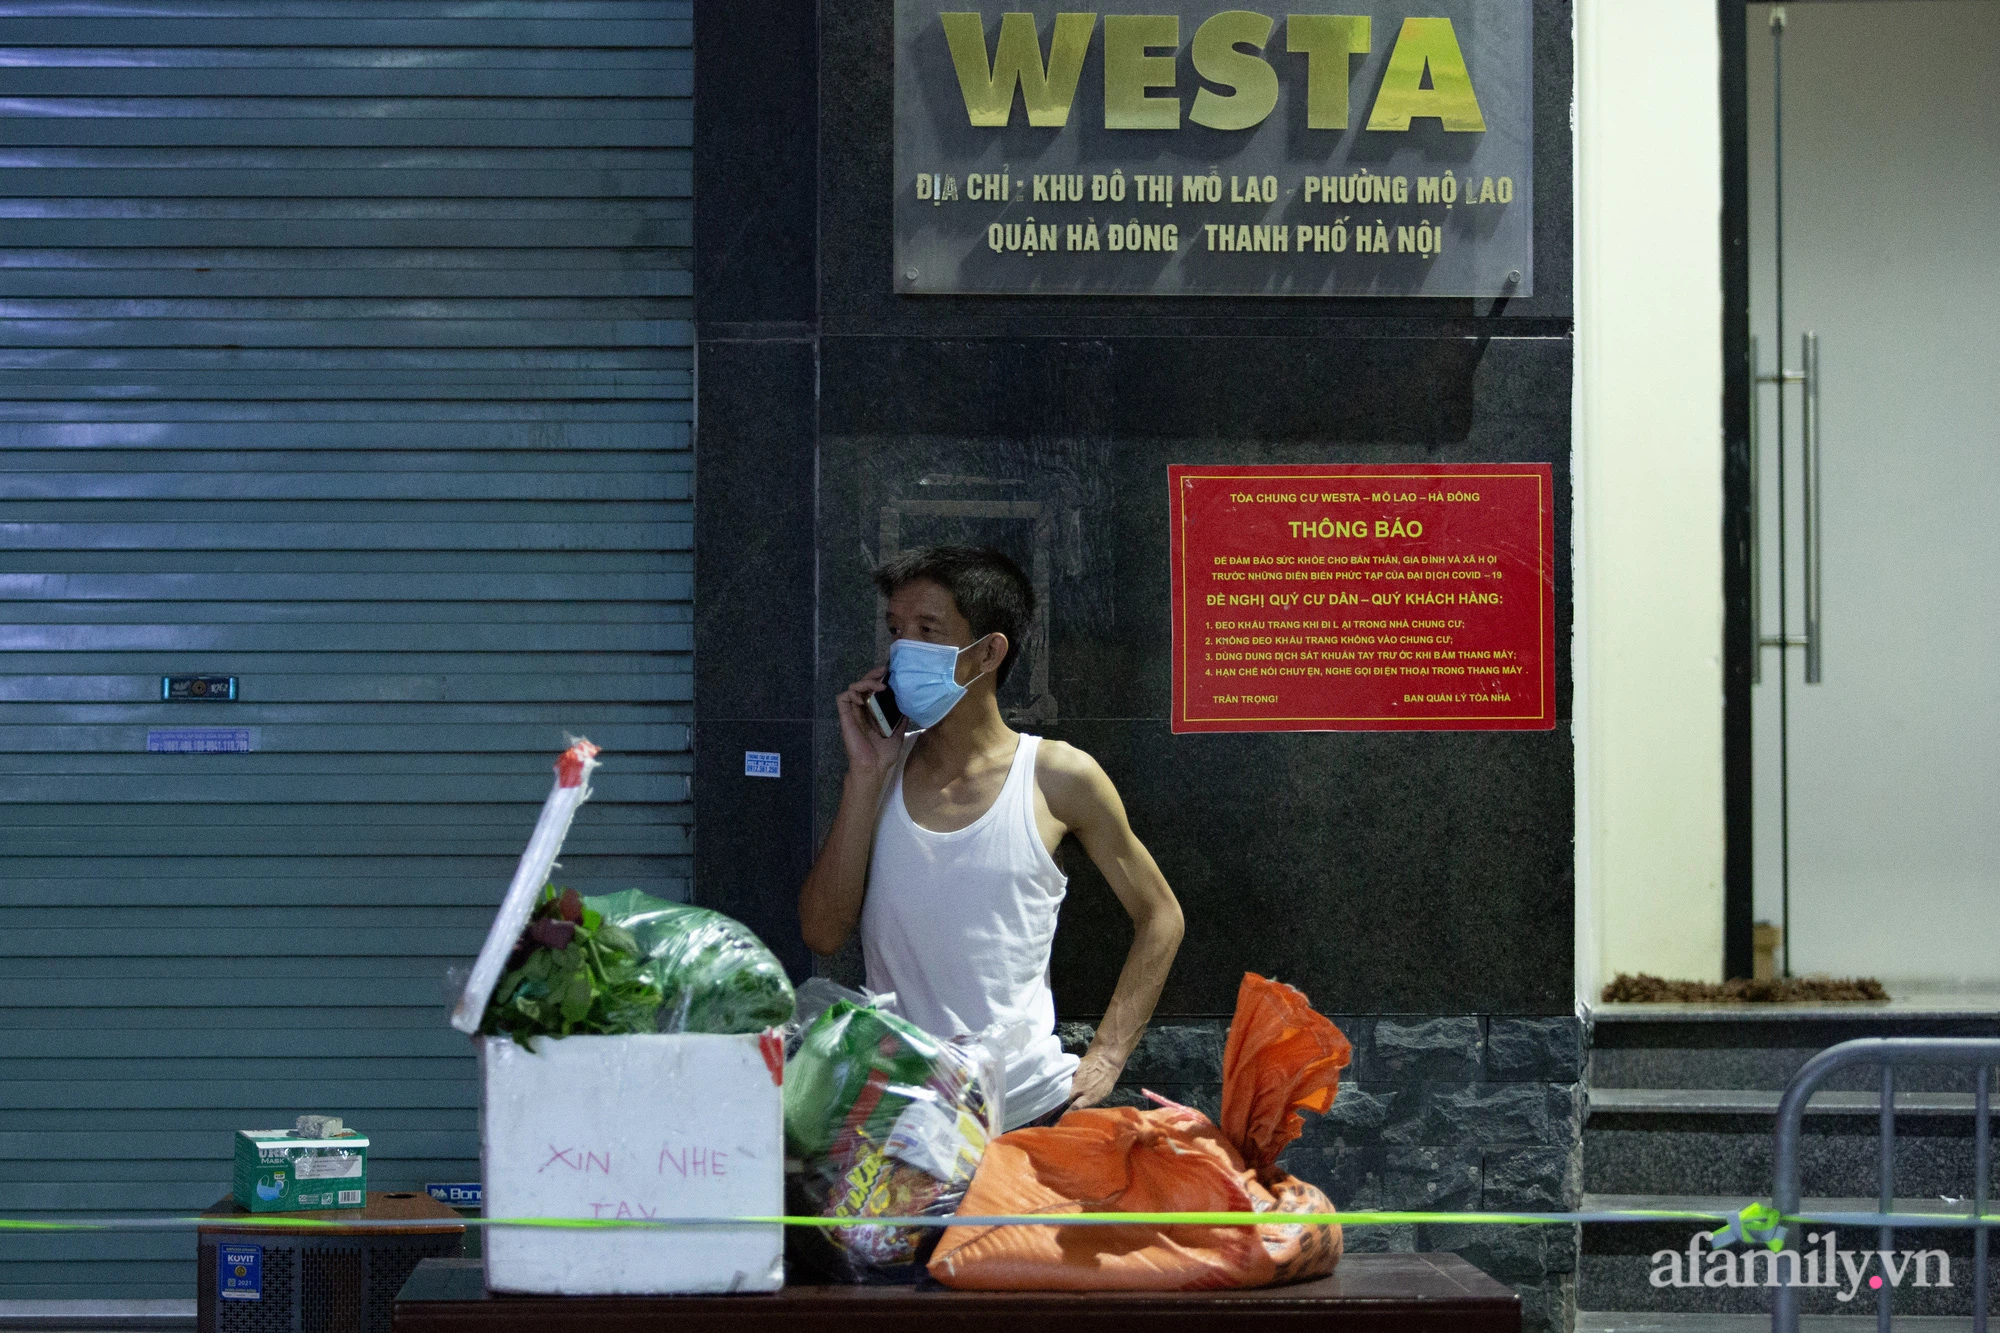 Hà Nội phong tỏa chung cư Westa với 1.200 dân, người thân liên tục tiếp tế nhu yếu phẩm trong đêm - Ảnh 11.